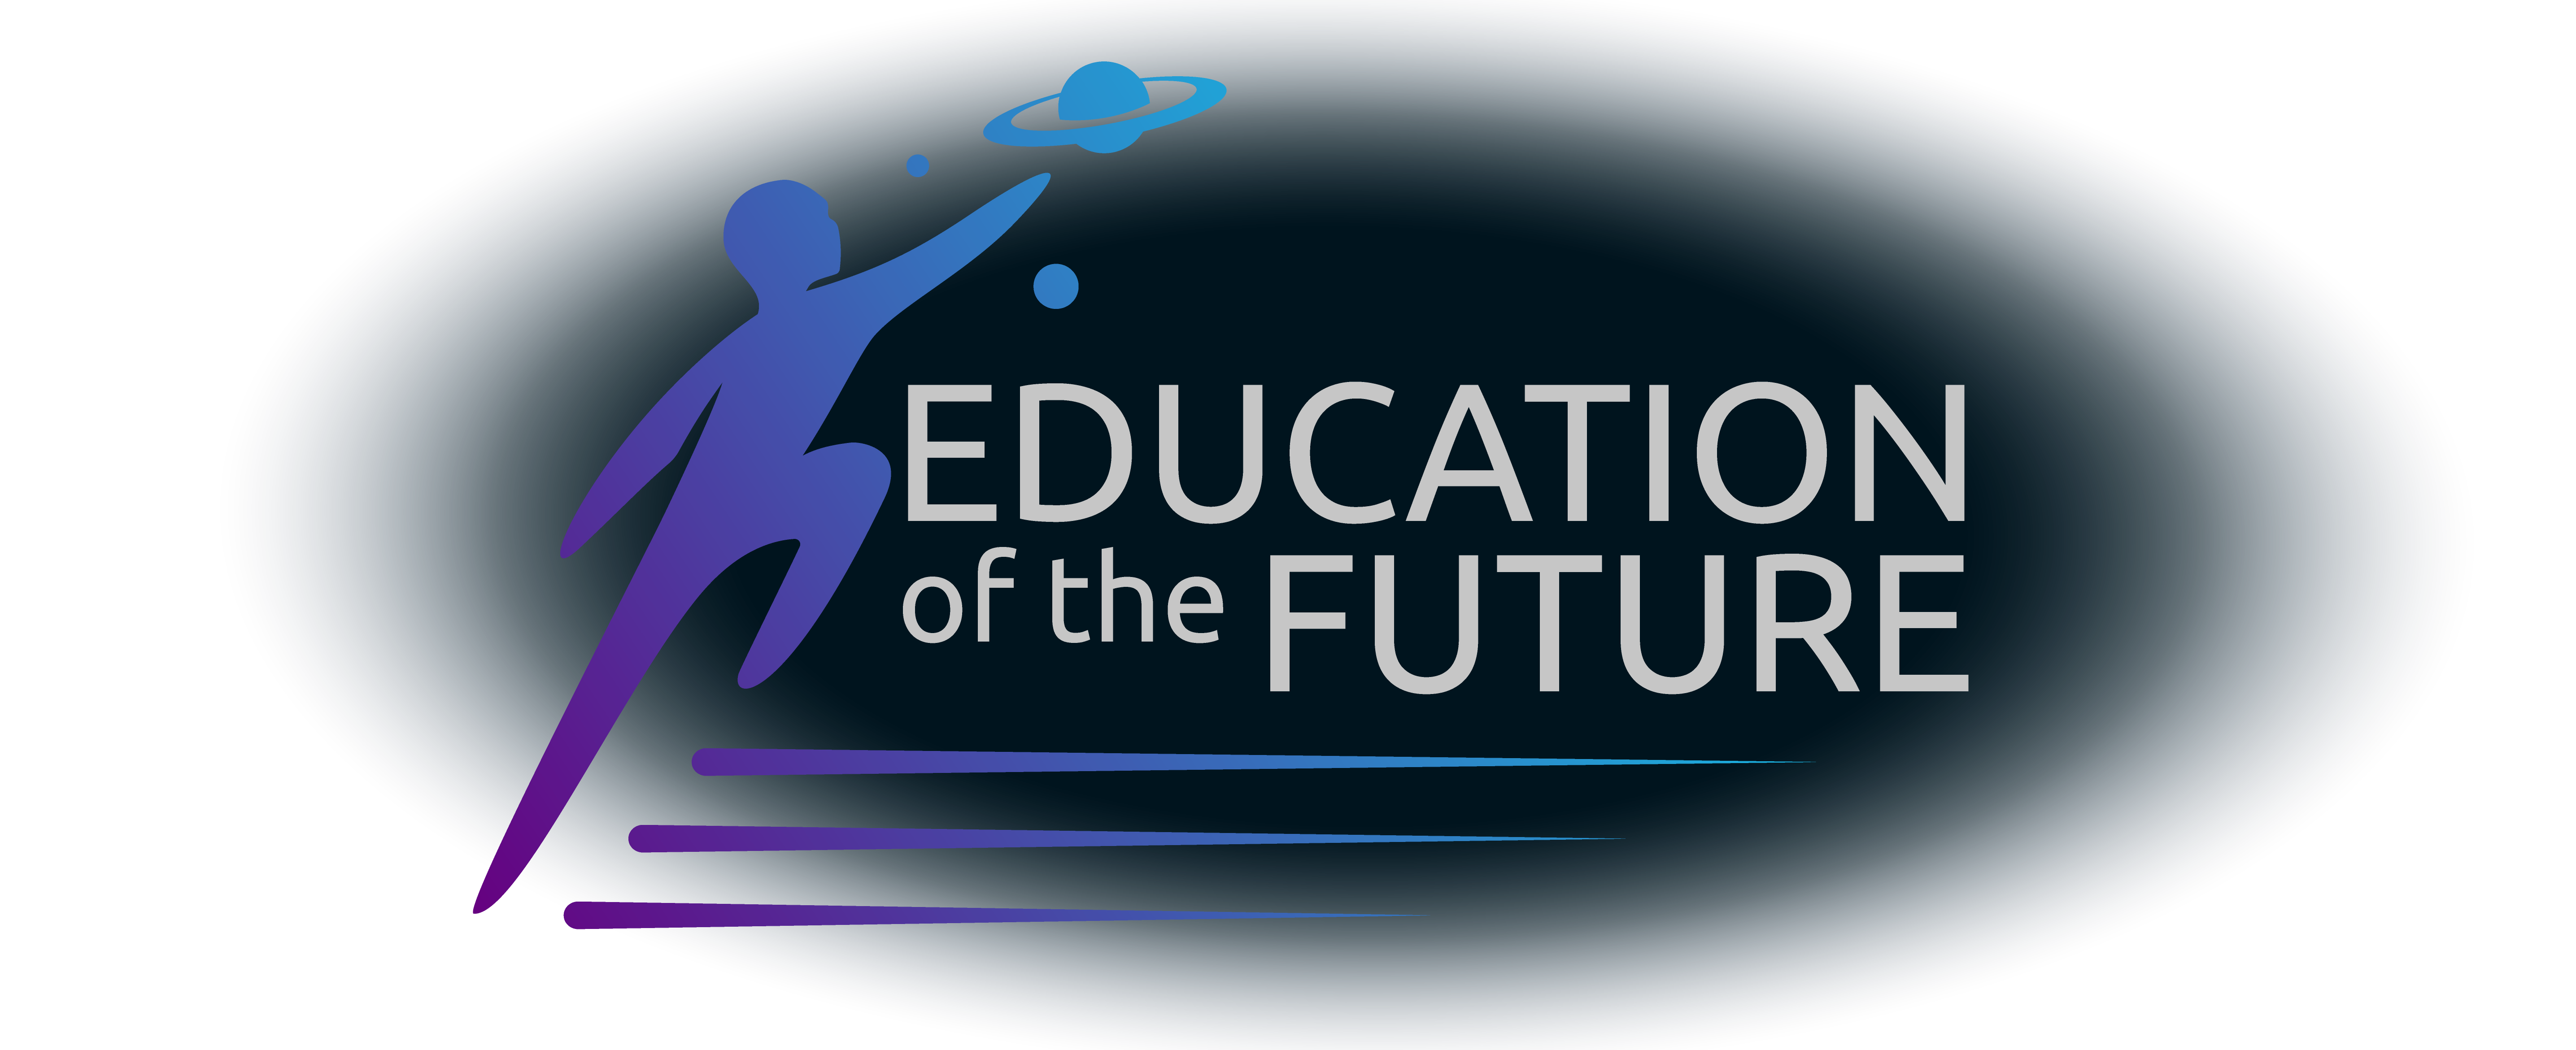 Education of Future